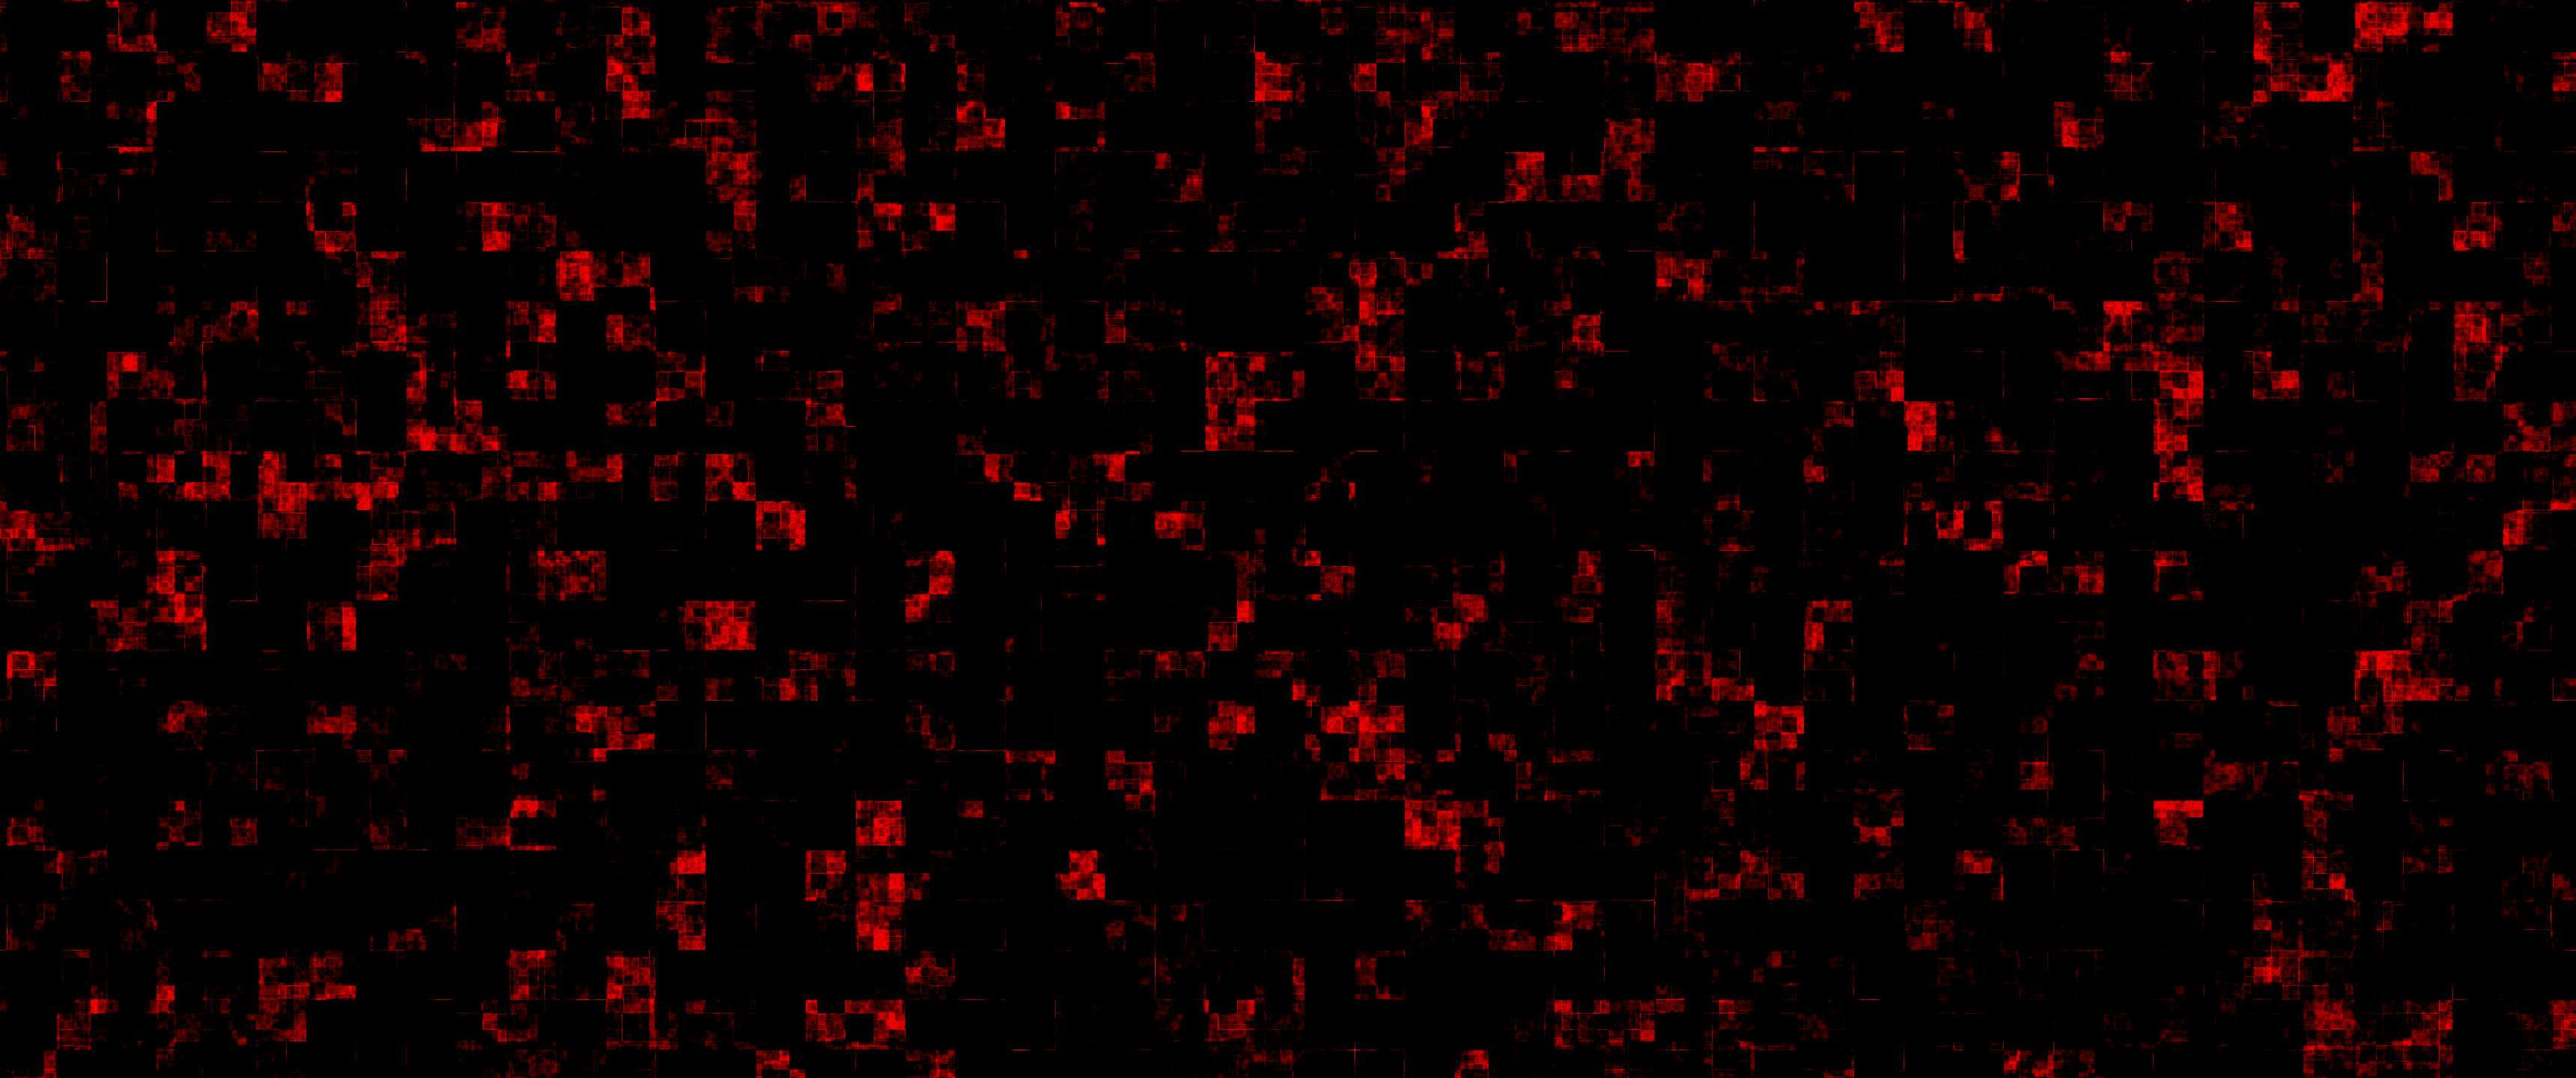 Red Backgrounds: Đừng bỏ lỡ cơ hội để chiêm ngưỡng những hình ảnh về Red Backgrounds đầy mê hoặc. Sắc đỏ sẽ mang đến cho bạn nhiều cảm xúc và tạo ra một điểm nhấn nổi bật trong tất cả các bức hình của bạn.